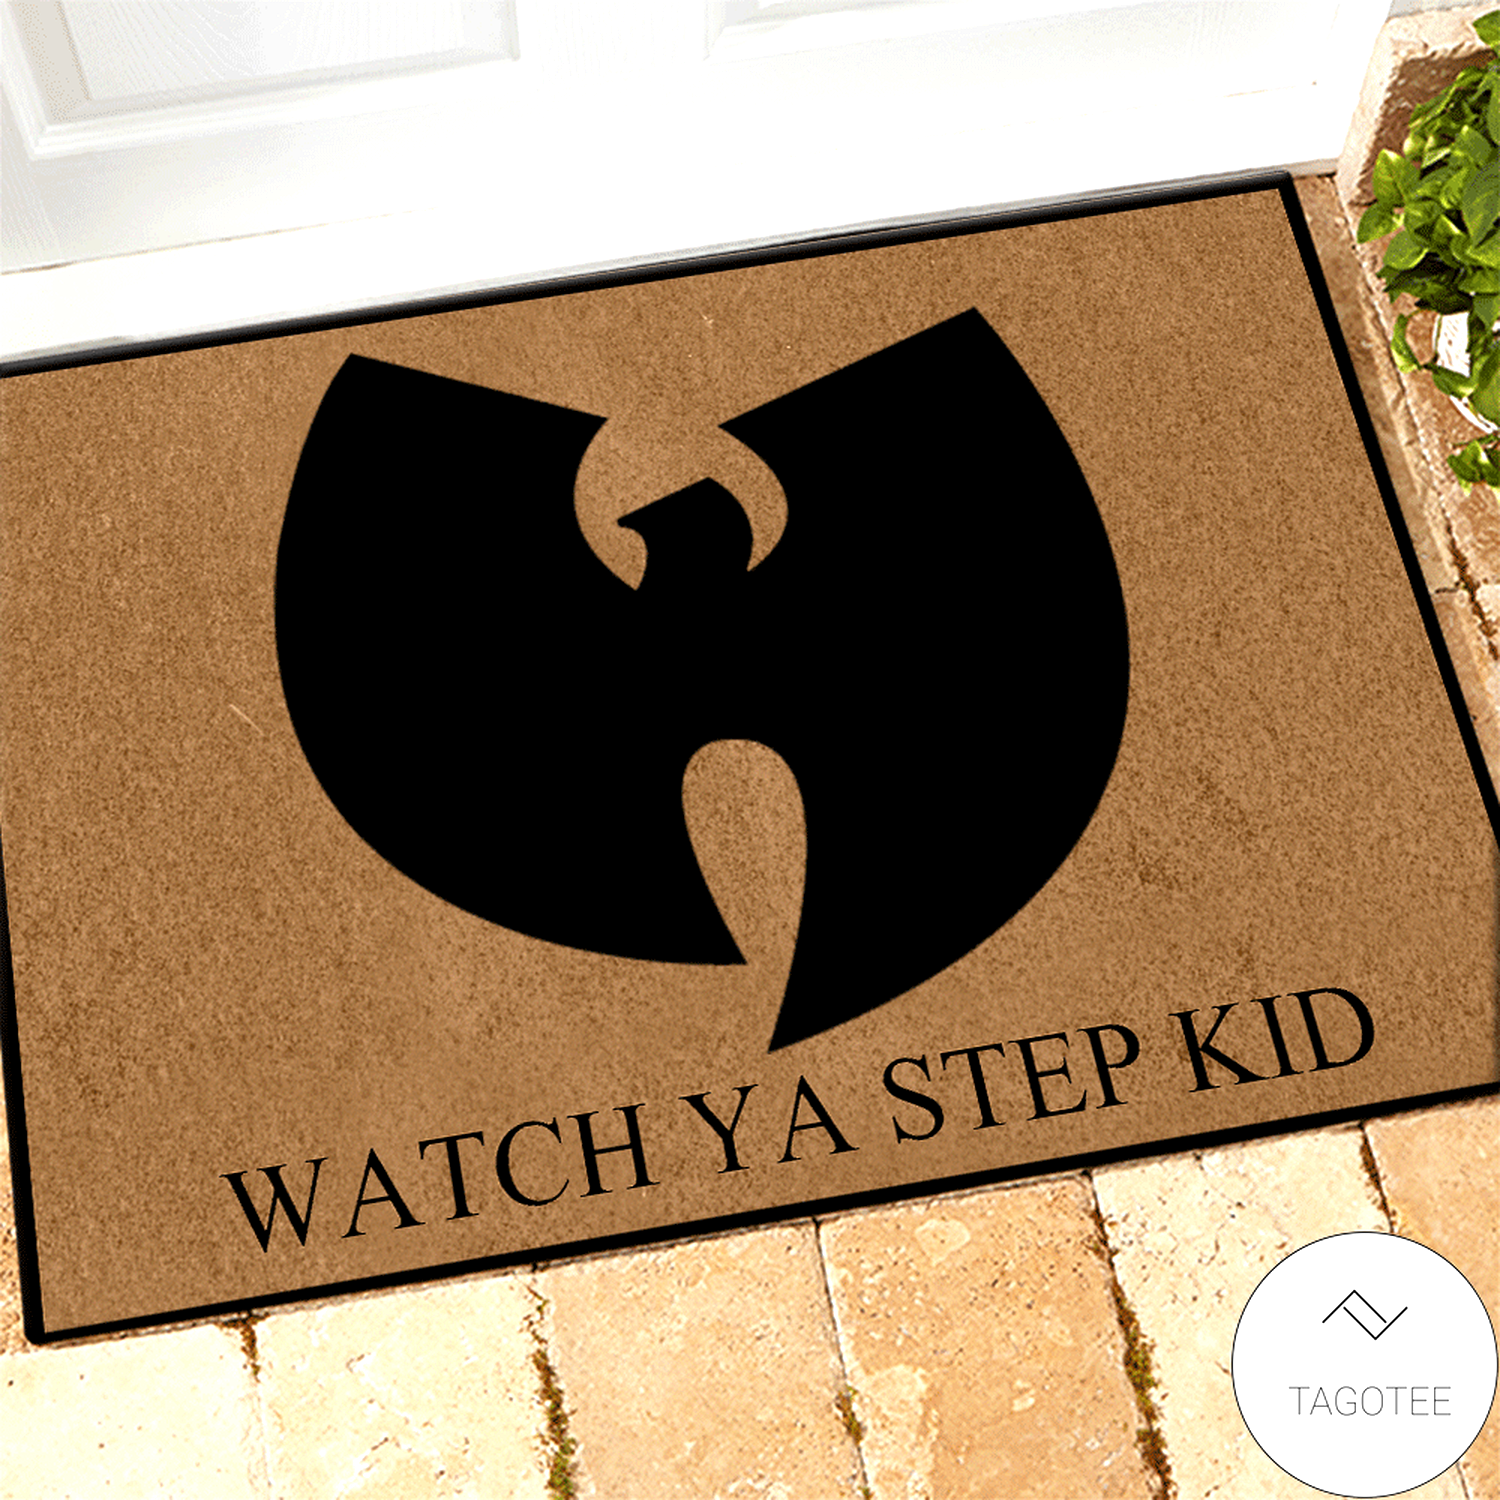 Wu-Tang Clan Watch ya step kid doormat | TAGOTEE